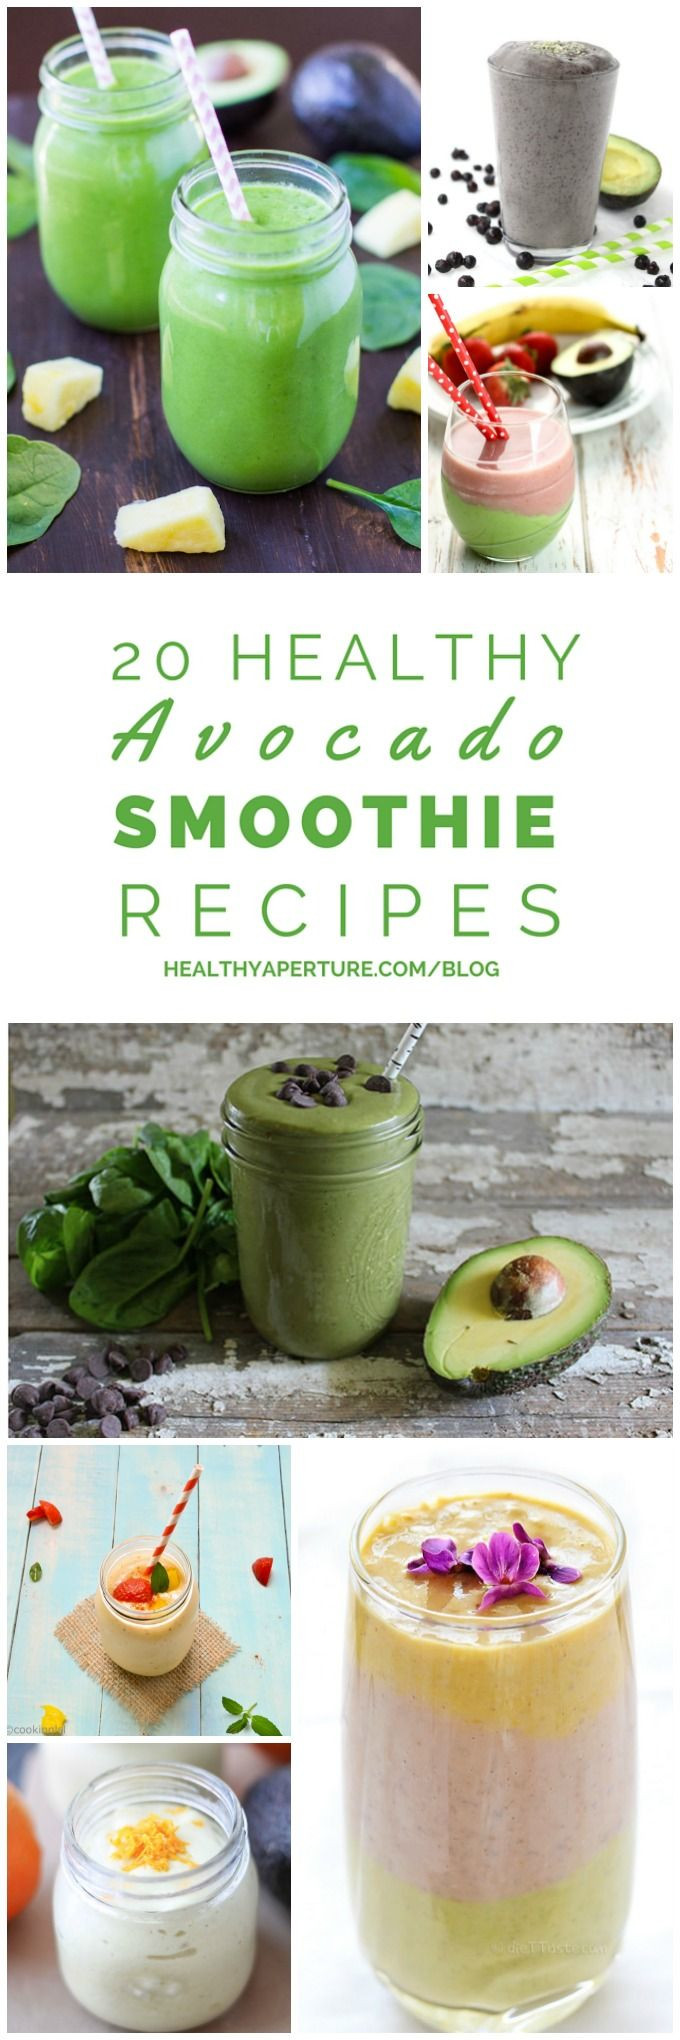 Healthy Avocado Smoothie Recipes
 20 Healthy Avocado Smoothie Recipes